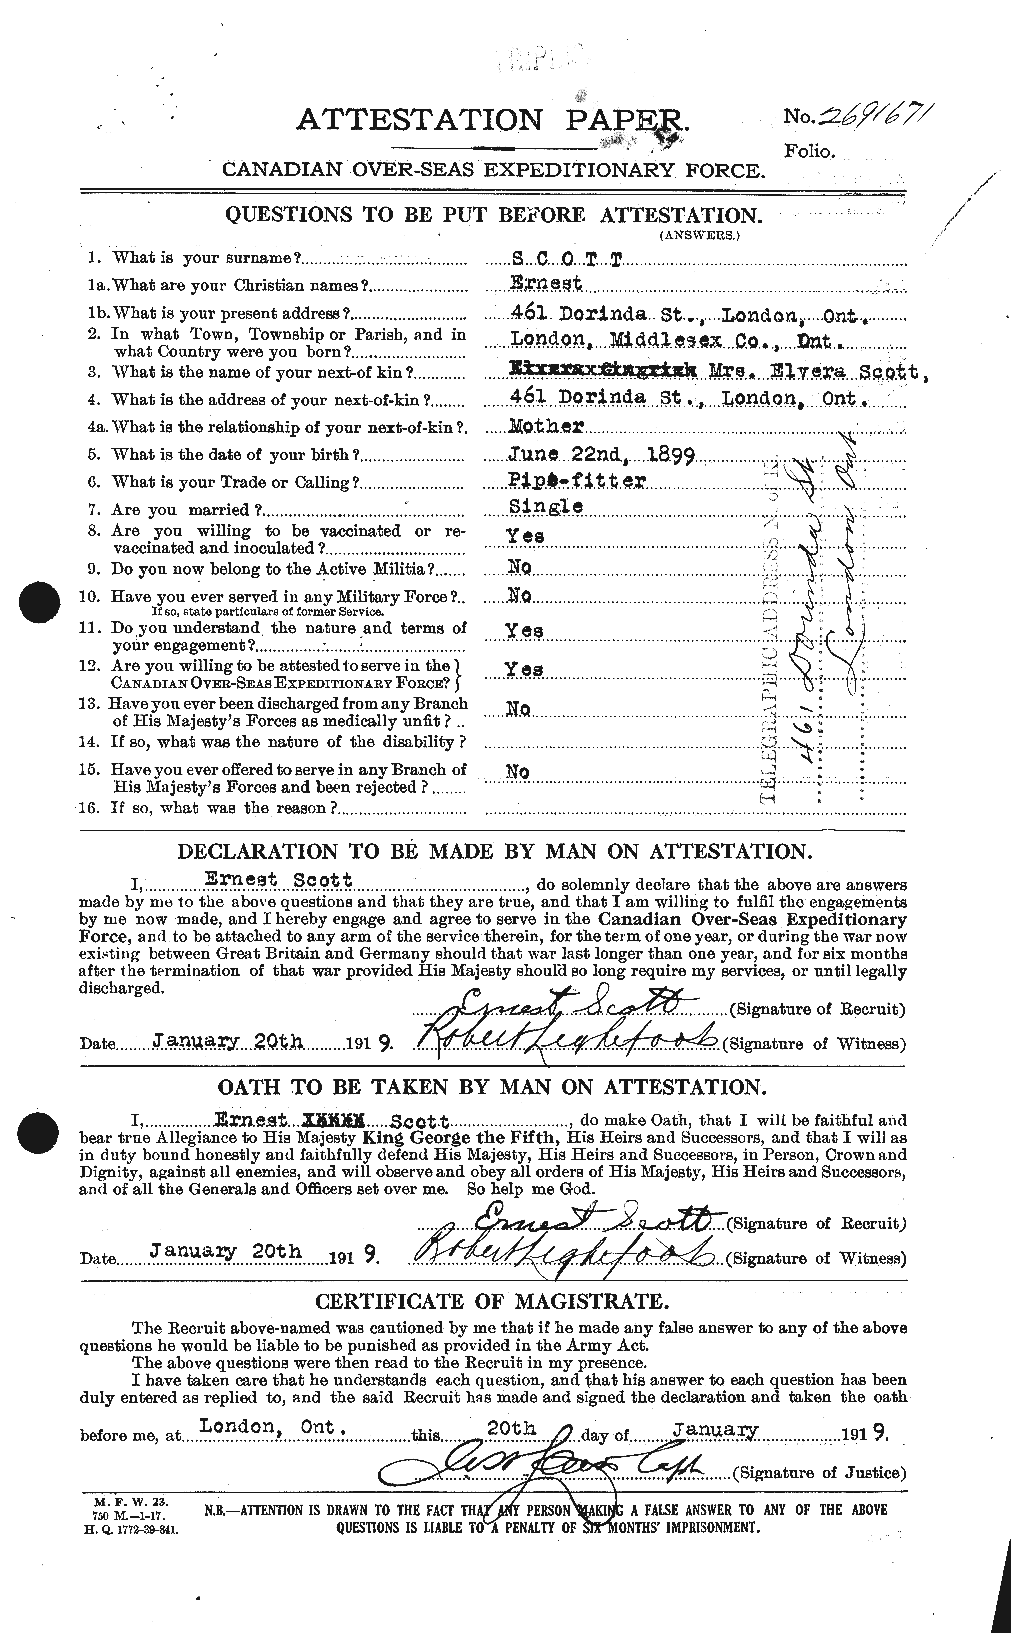 Dossiers du Personnel de la Première Guerre mondiale - CEC 085019a